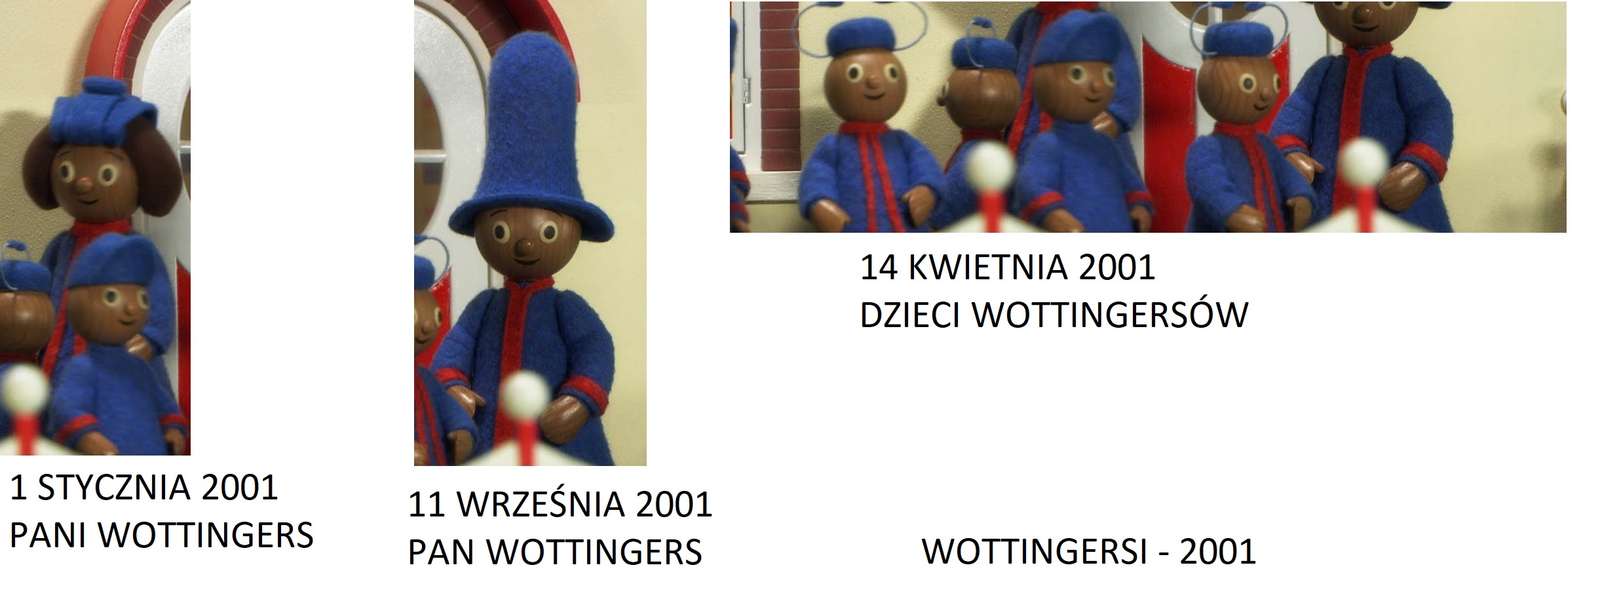 ウォッティンガー - 2001 写真からオンラインパズル